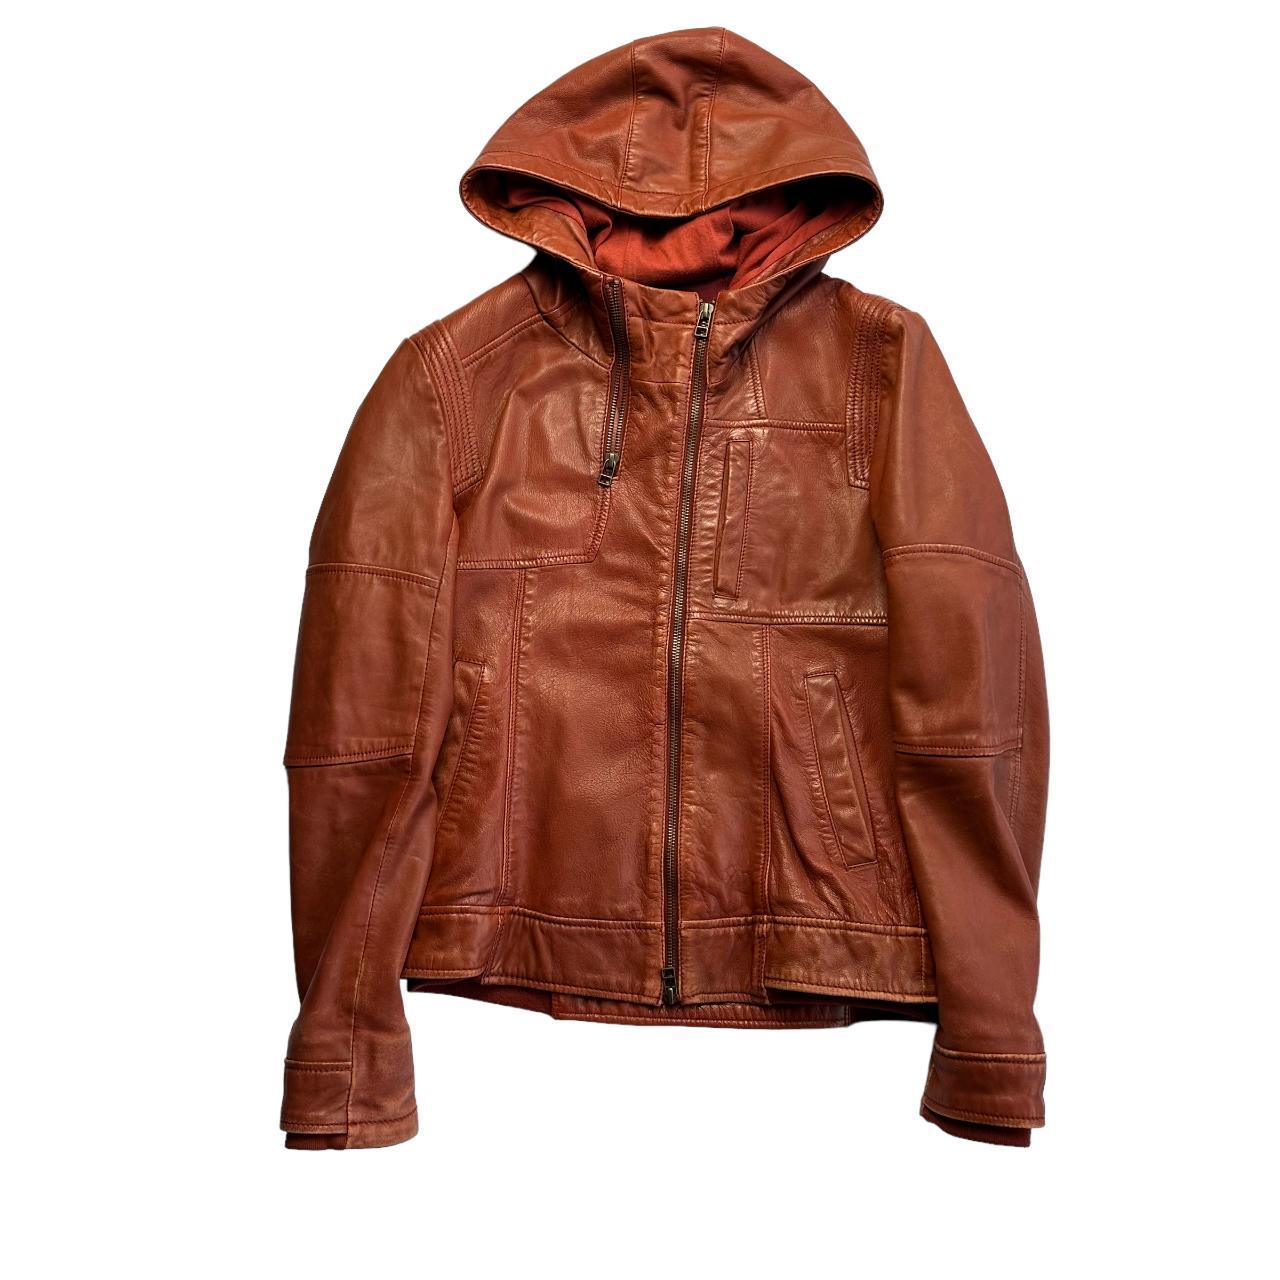 Avirex beige leather lightweight jacket - Known Source